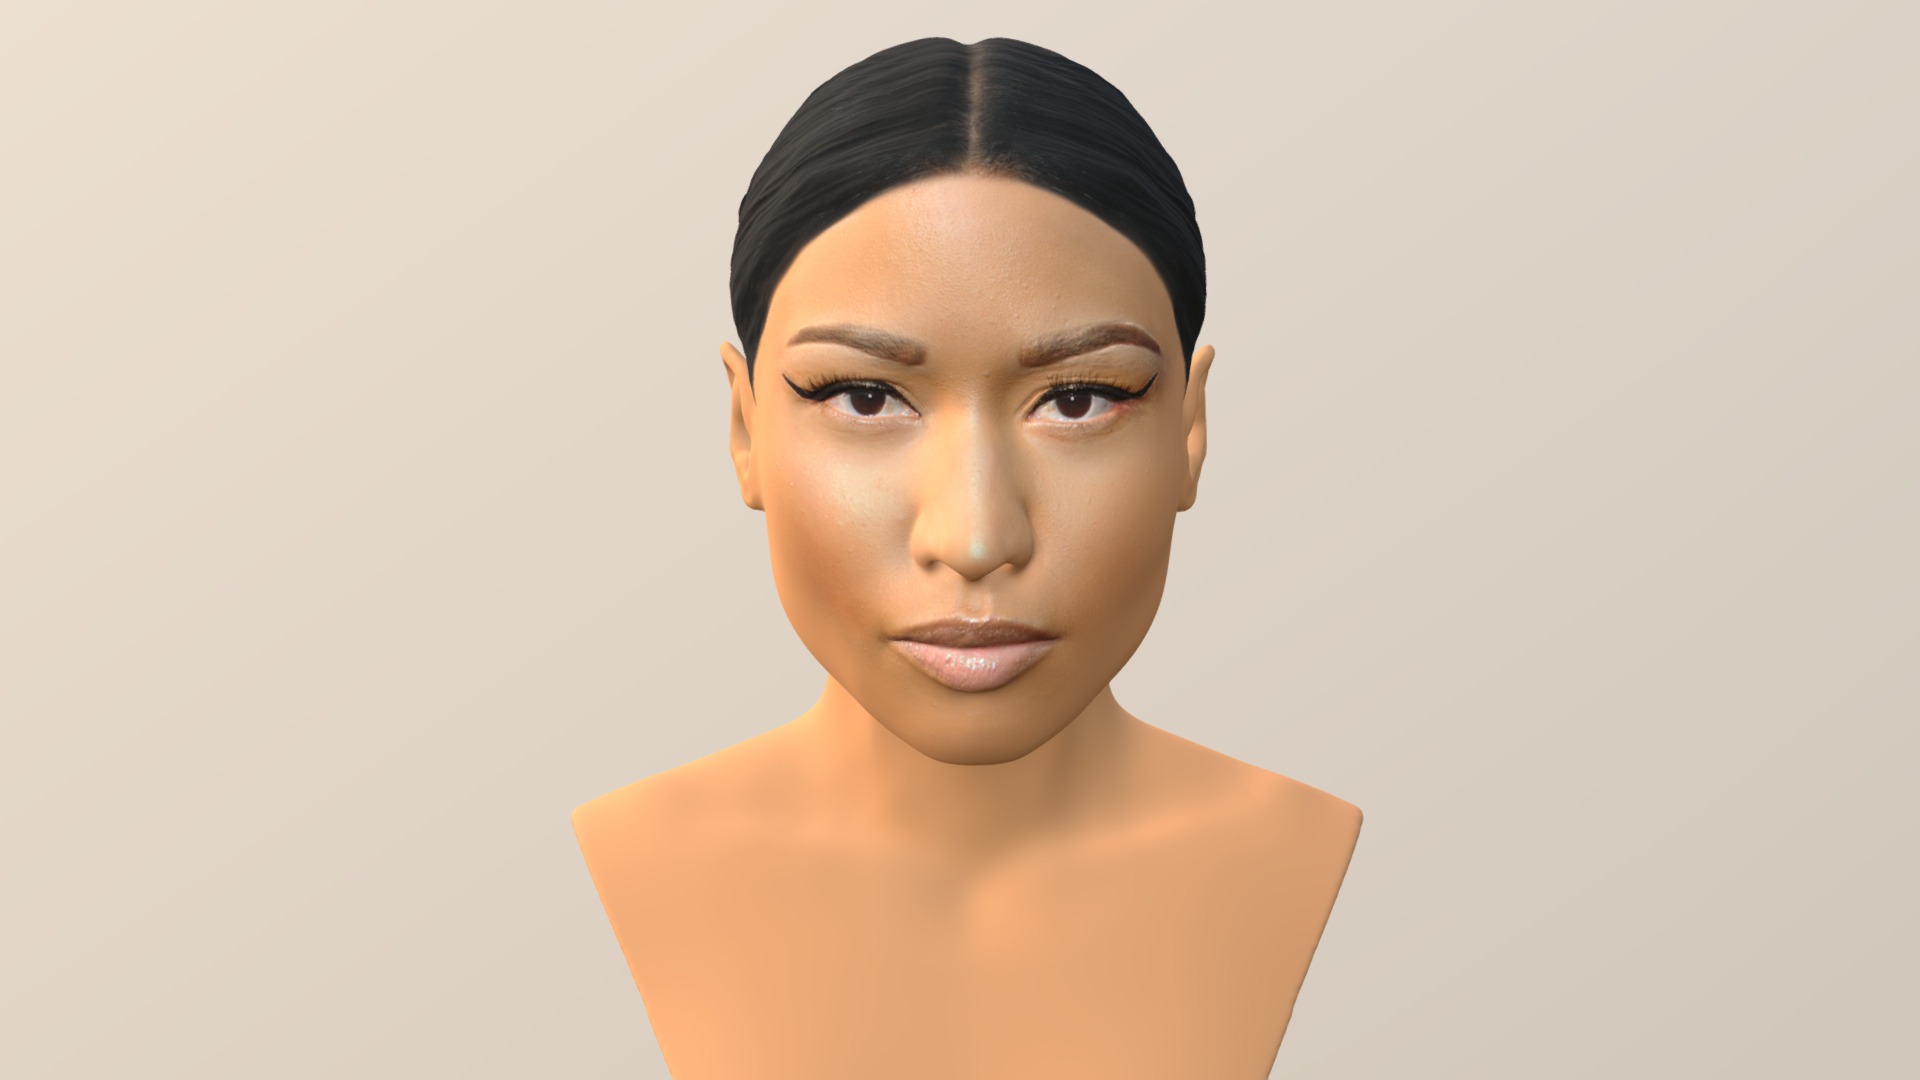 3D model Nicki Minaj bust for full color 3D printing - This is a 3D model of the Nicki Minaj bust for full color 3D printing. The 3D model is about a woman with short black hair.